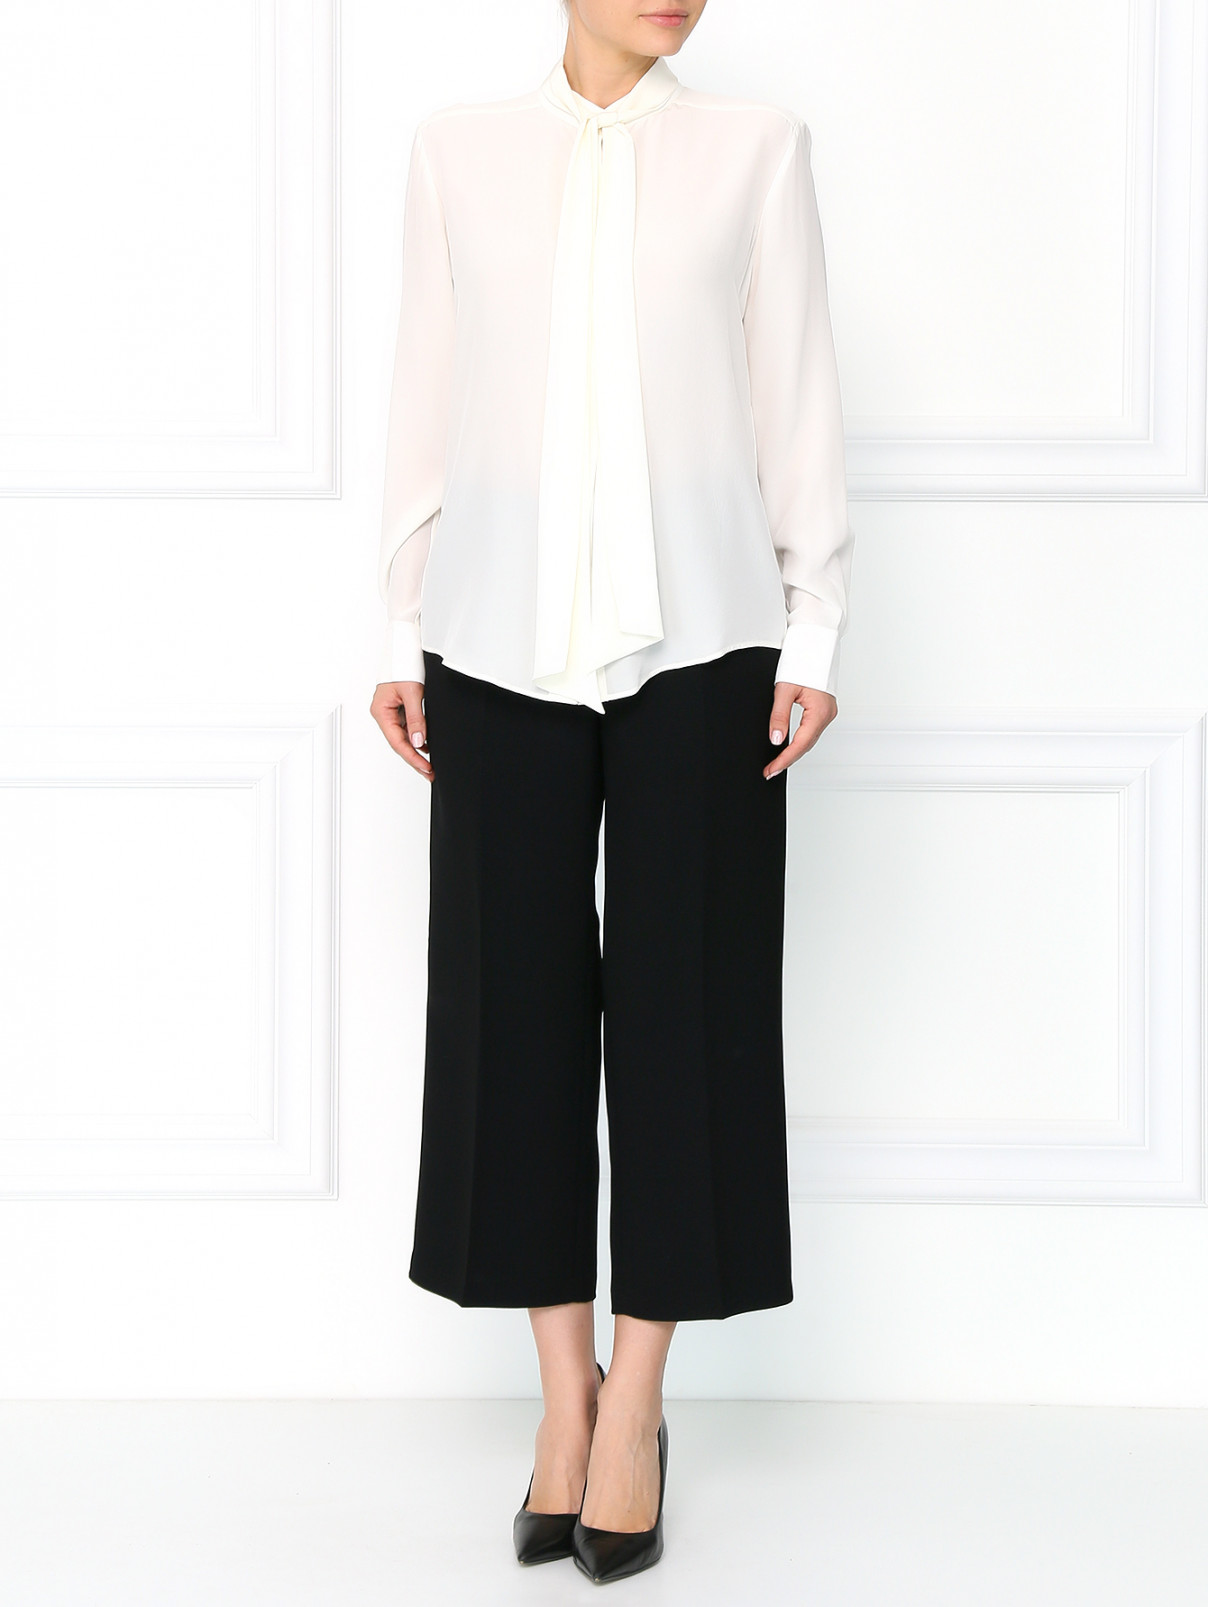 Широкие брюки с боковыми карманами Barbara Bui  –  Модель Общий вид  – Цвет:  Черный